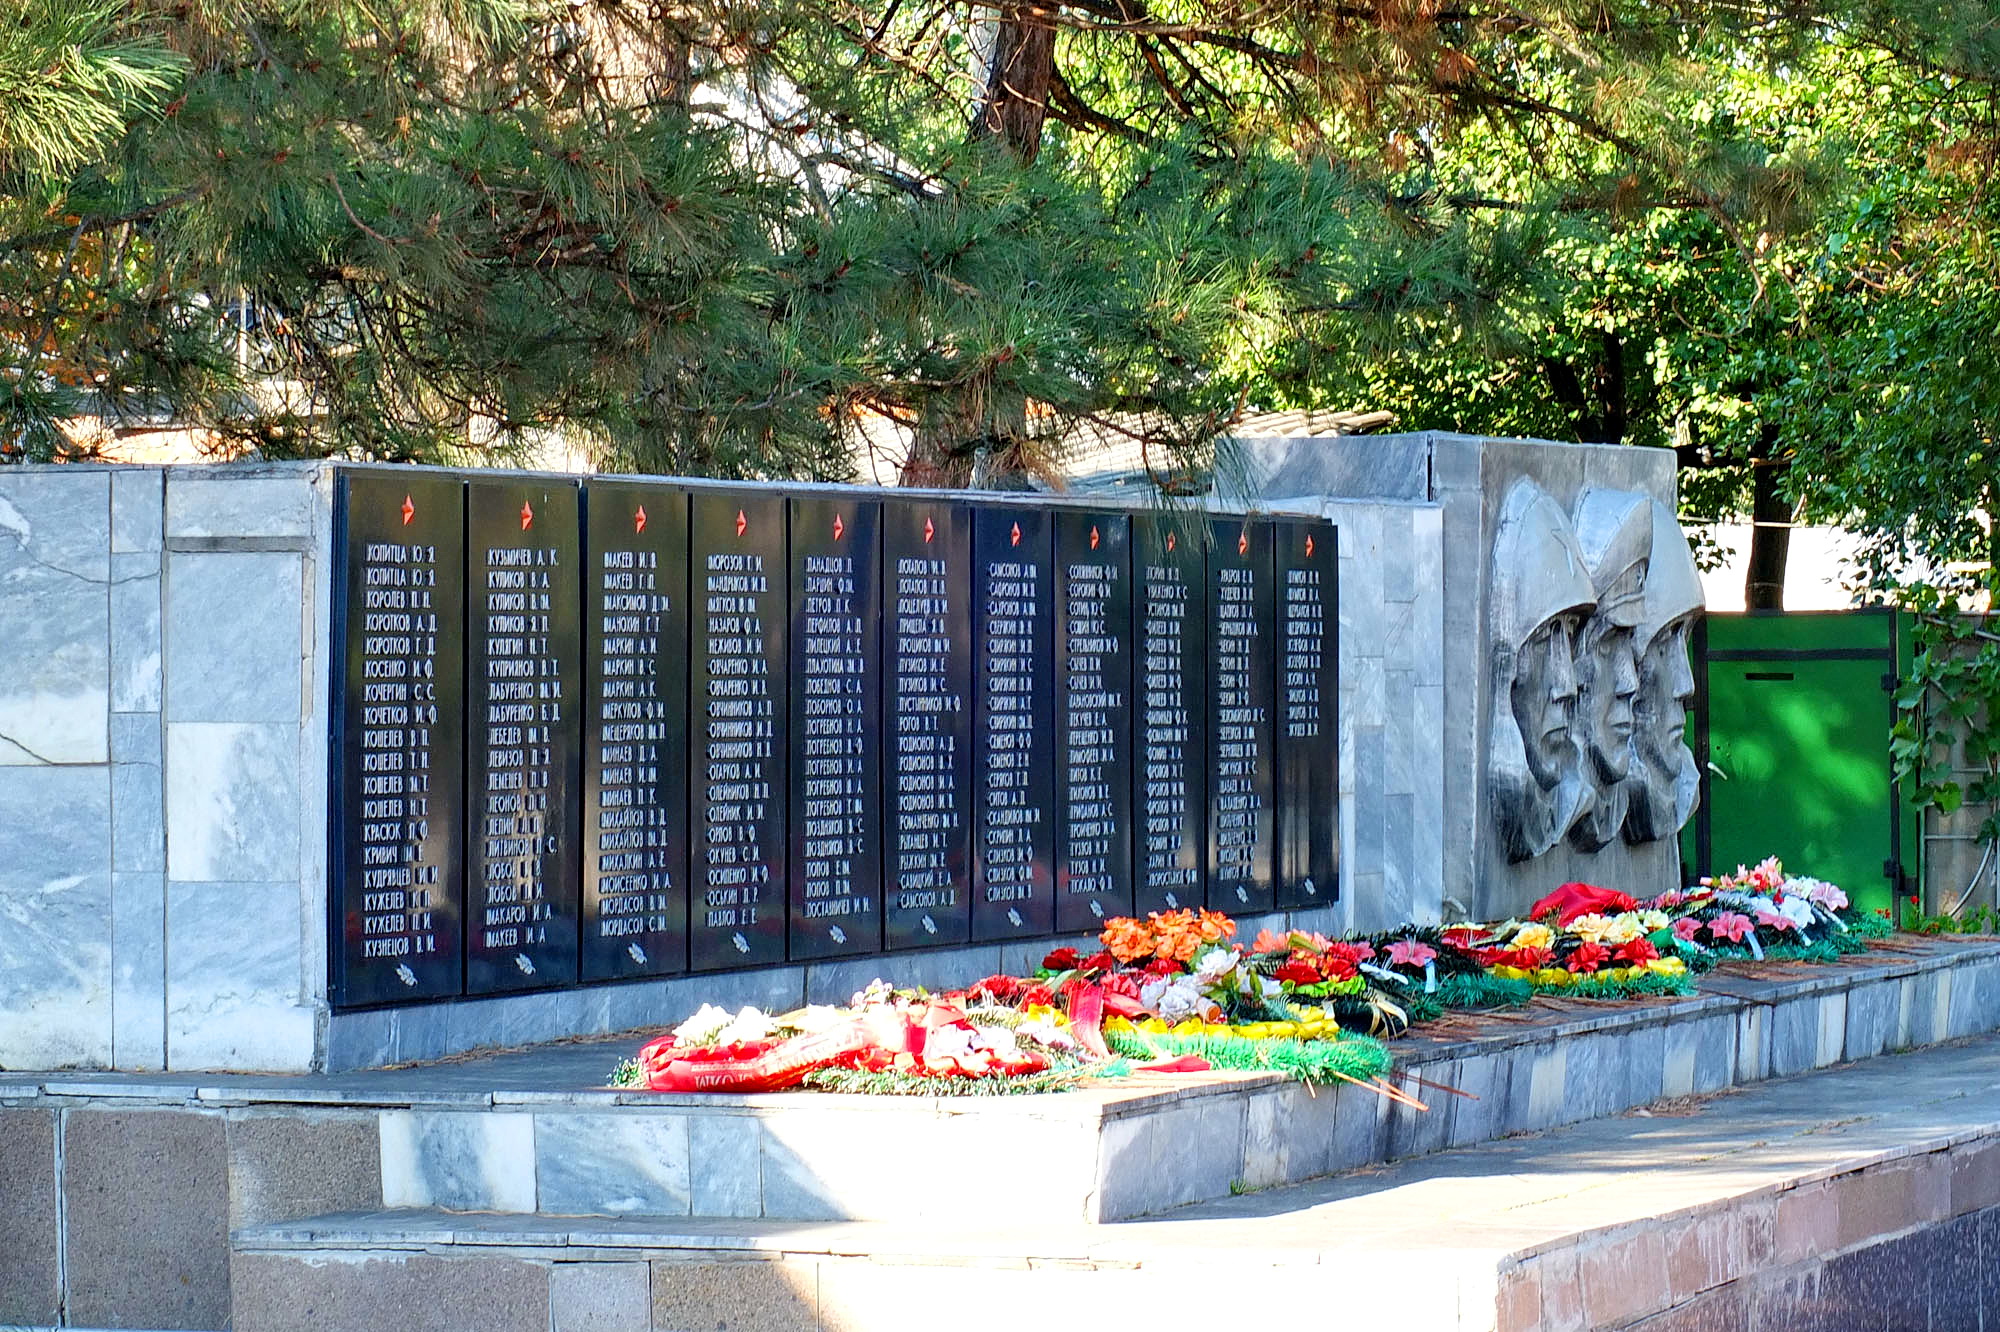 Фото братских могил великой отечественной войны